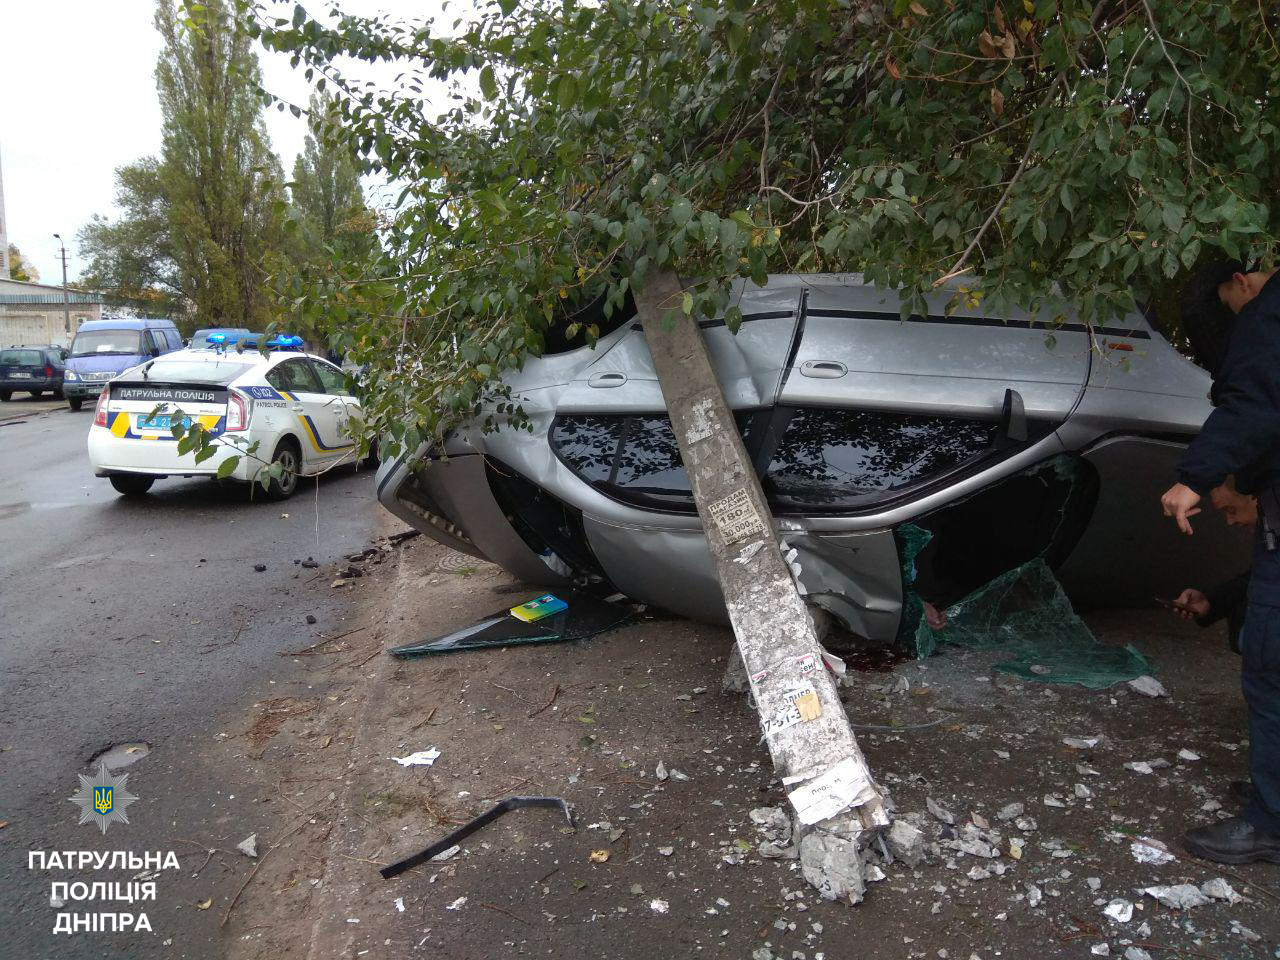 Новость - События - Ужасная авария на Семафорной: машина въехала в столб, есть жертвы